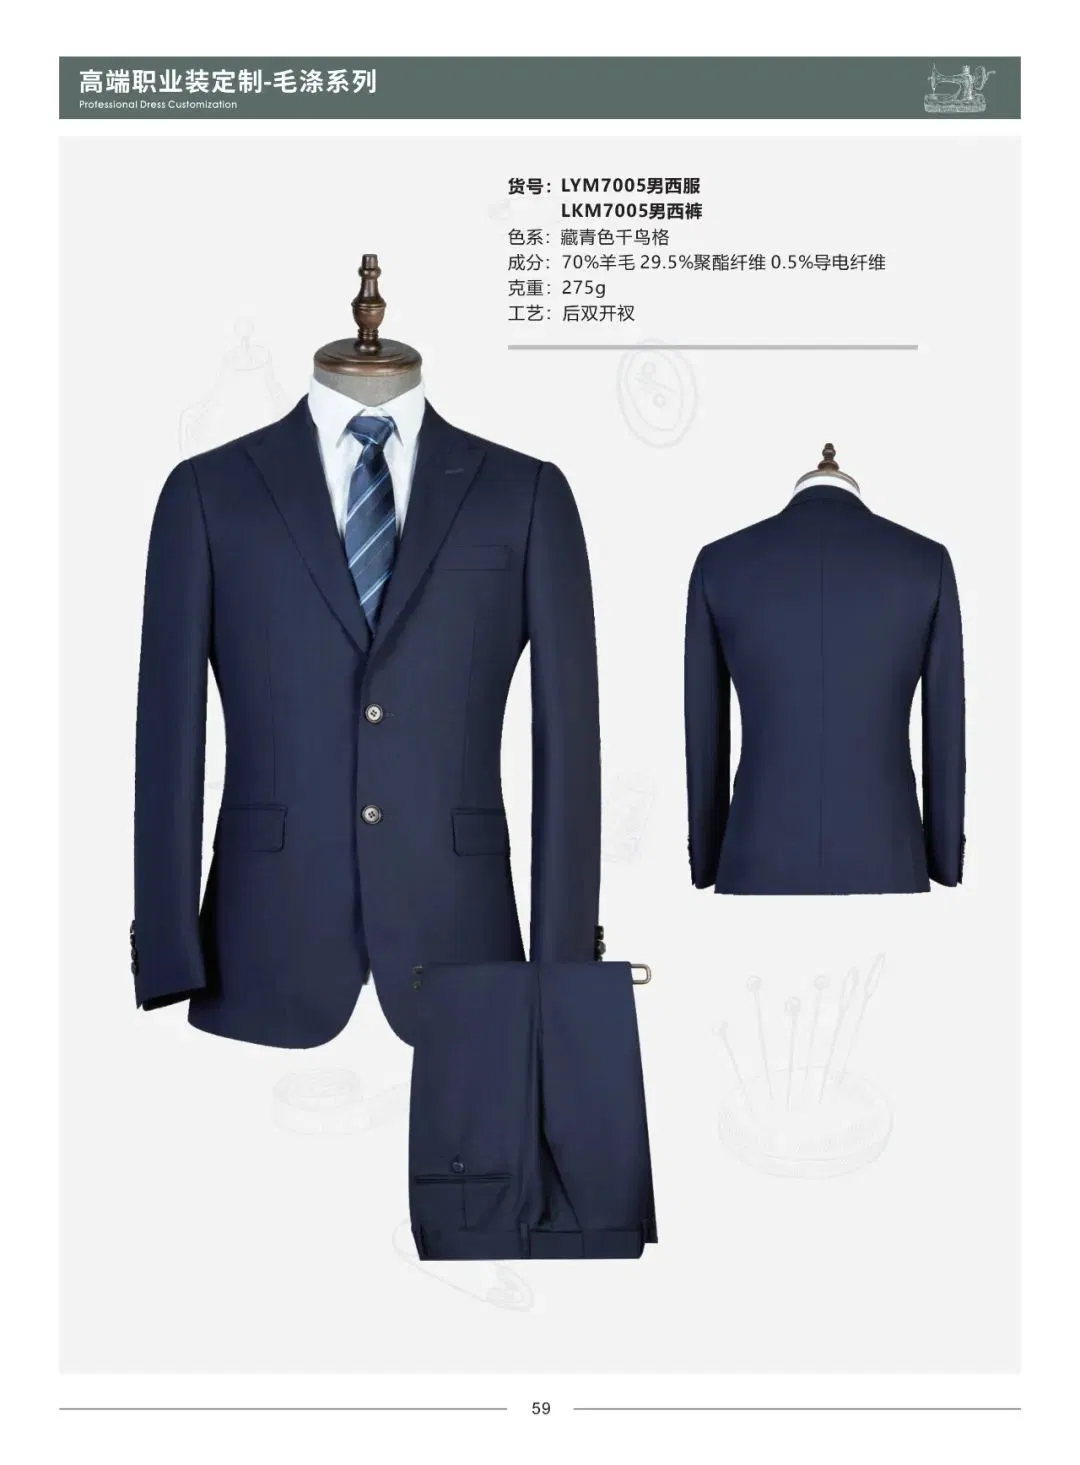 Suits Custom Mtm Apparel Winter Coat 70% Wool Navy Blue Plalette Business Suit Office Suit